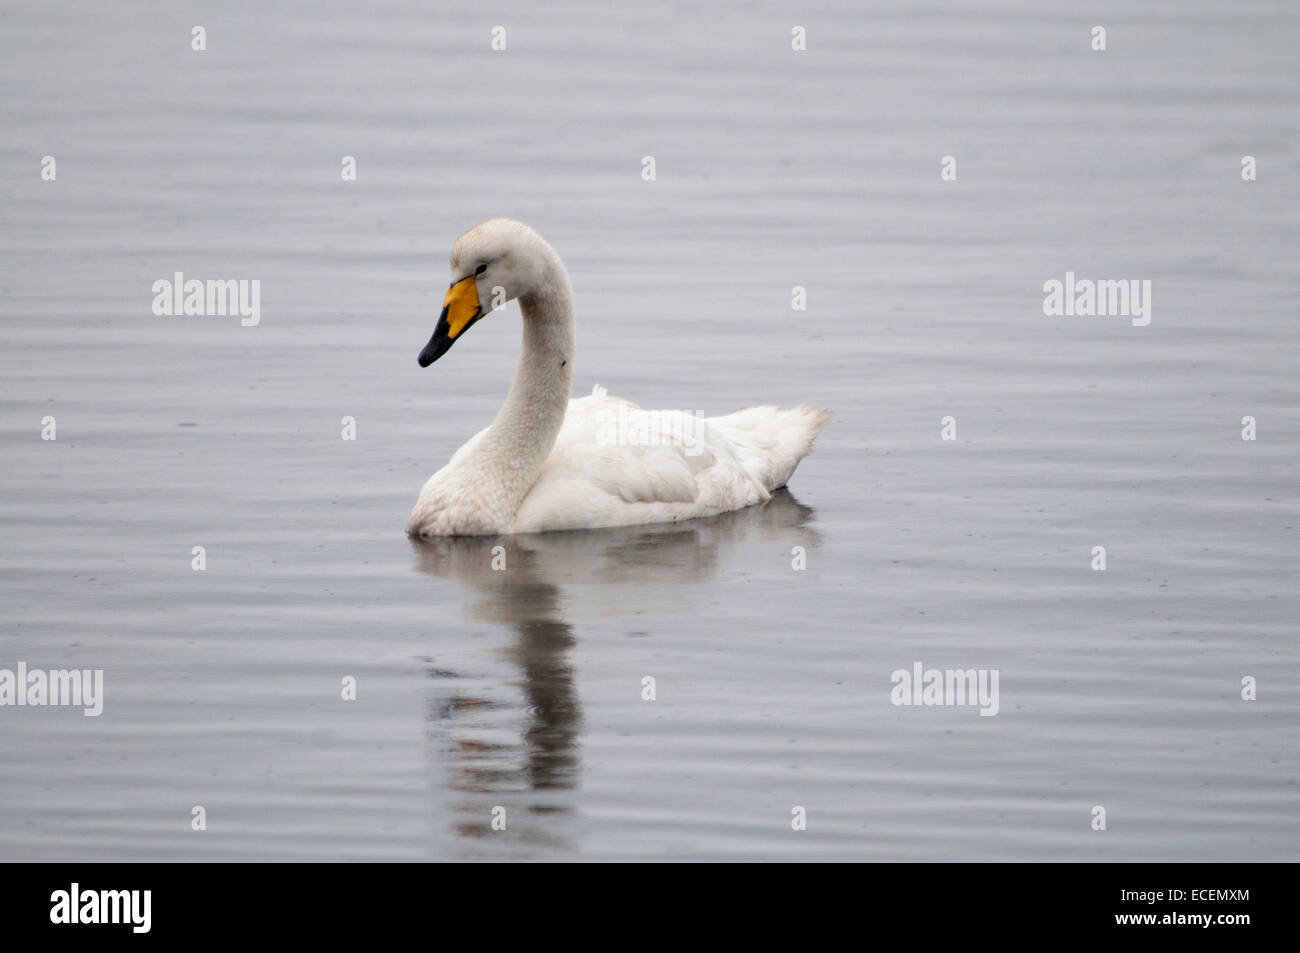 Whooper Swan nuoto presso la costa delle isole Faerøer nell'Oceano Atlantico. Schwimmt Singschwan Vor den Färöer-Inseln. Foto Stock